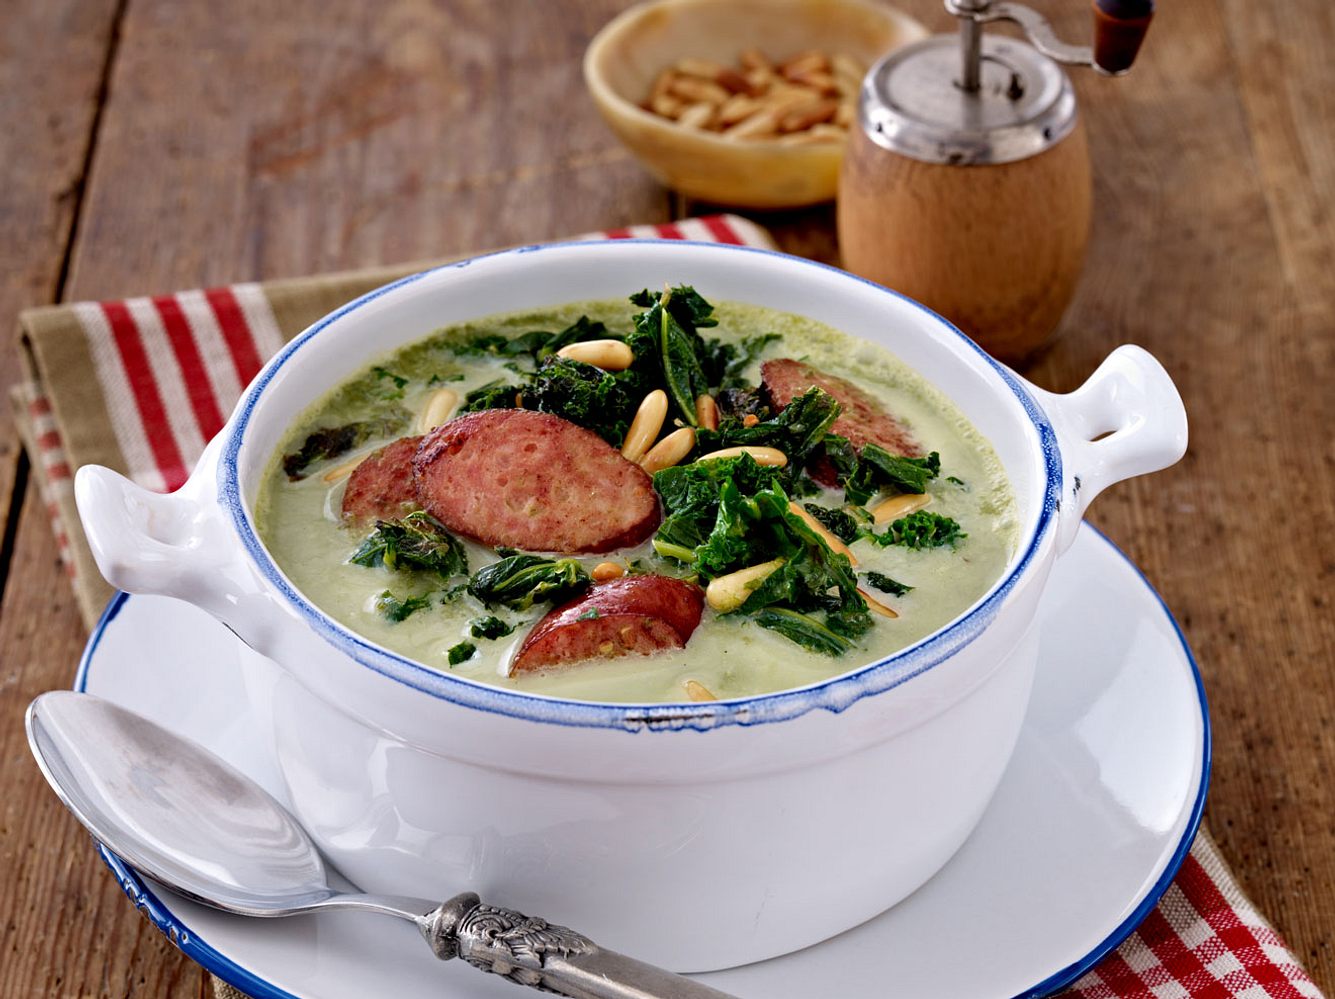 Du isst gerne cremige Suppen und Grünkohl? Dann wirst du diesen Eintopf lieben.